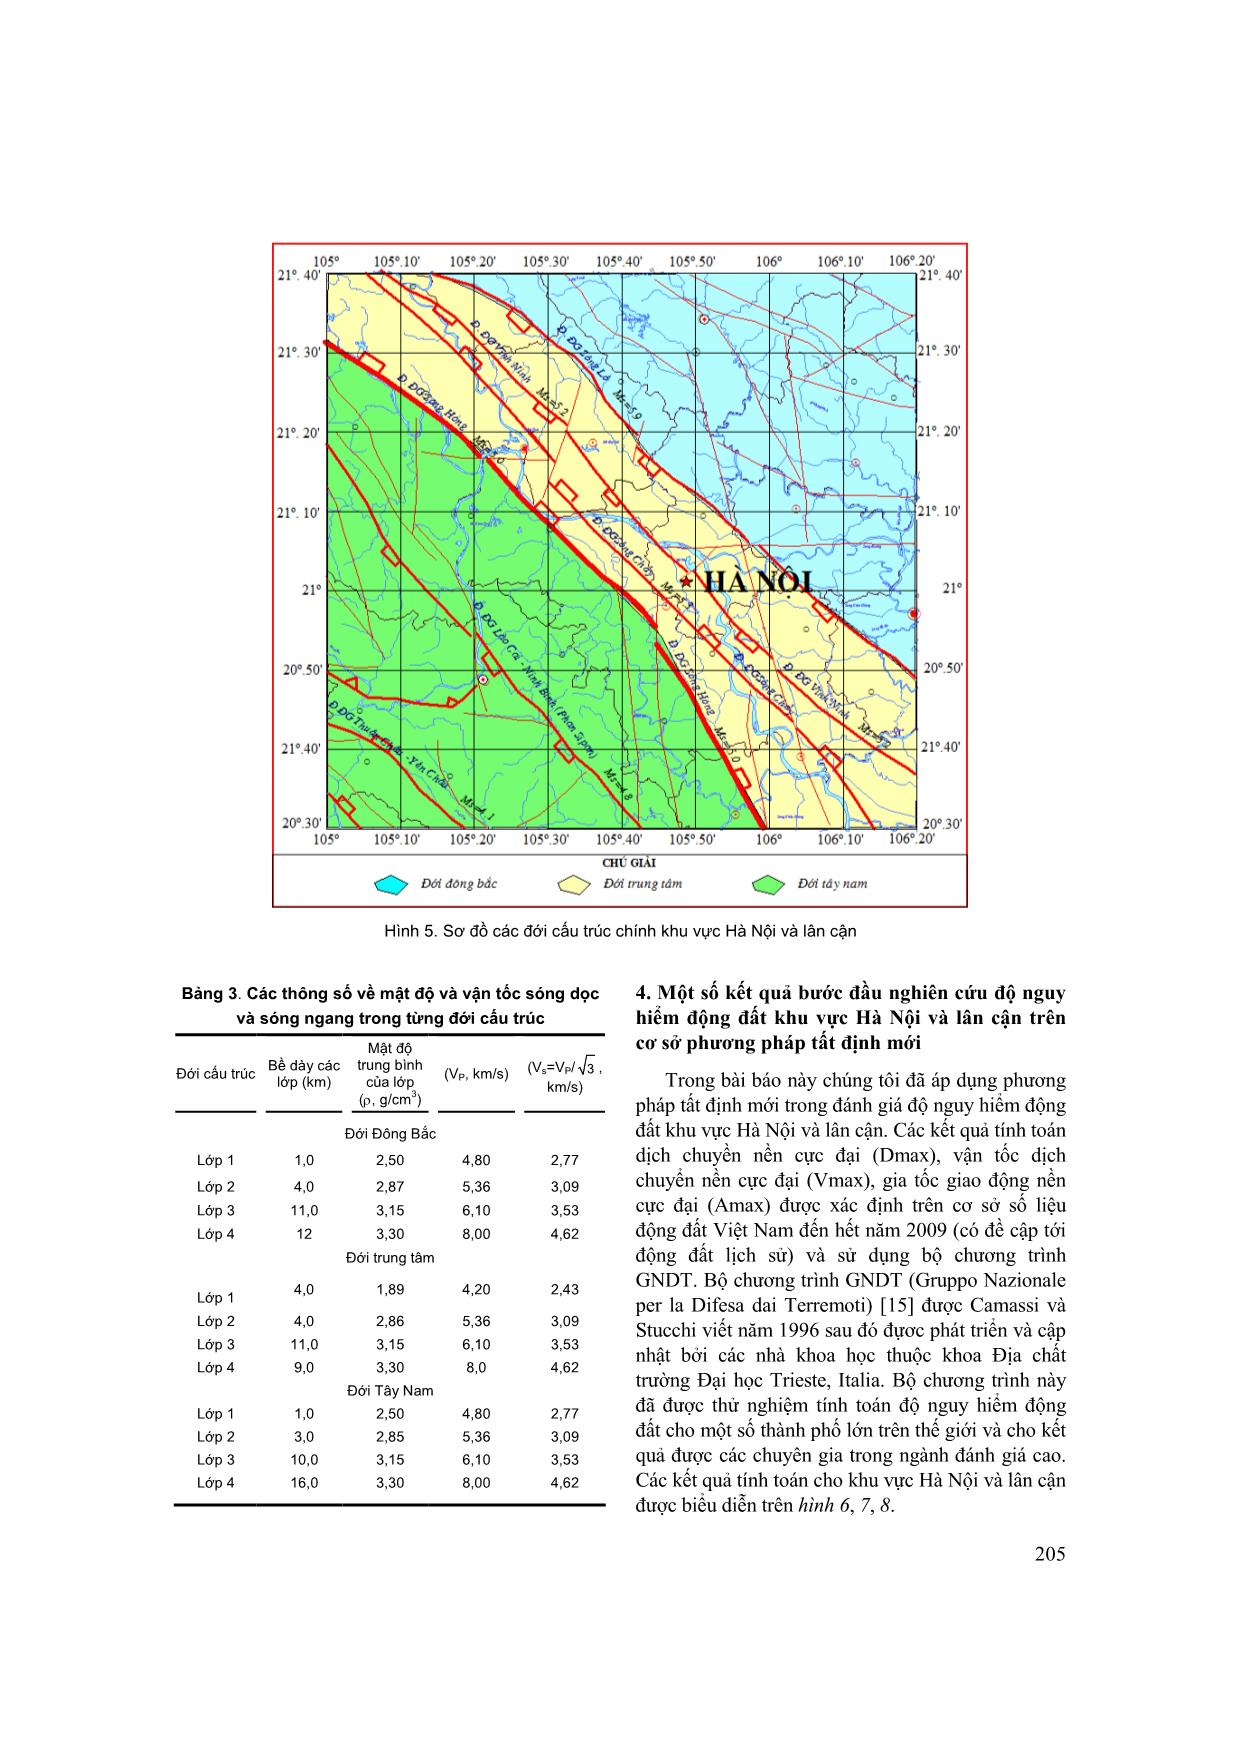 Đánh giá độ nguy hiểm động đất khu vực thành phố Hà Nội và lân cận trên cơ sở thuật toán tất định mới trang 6